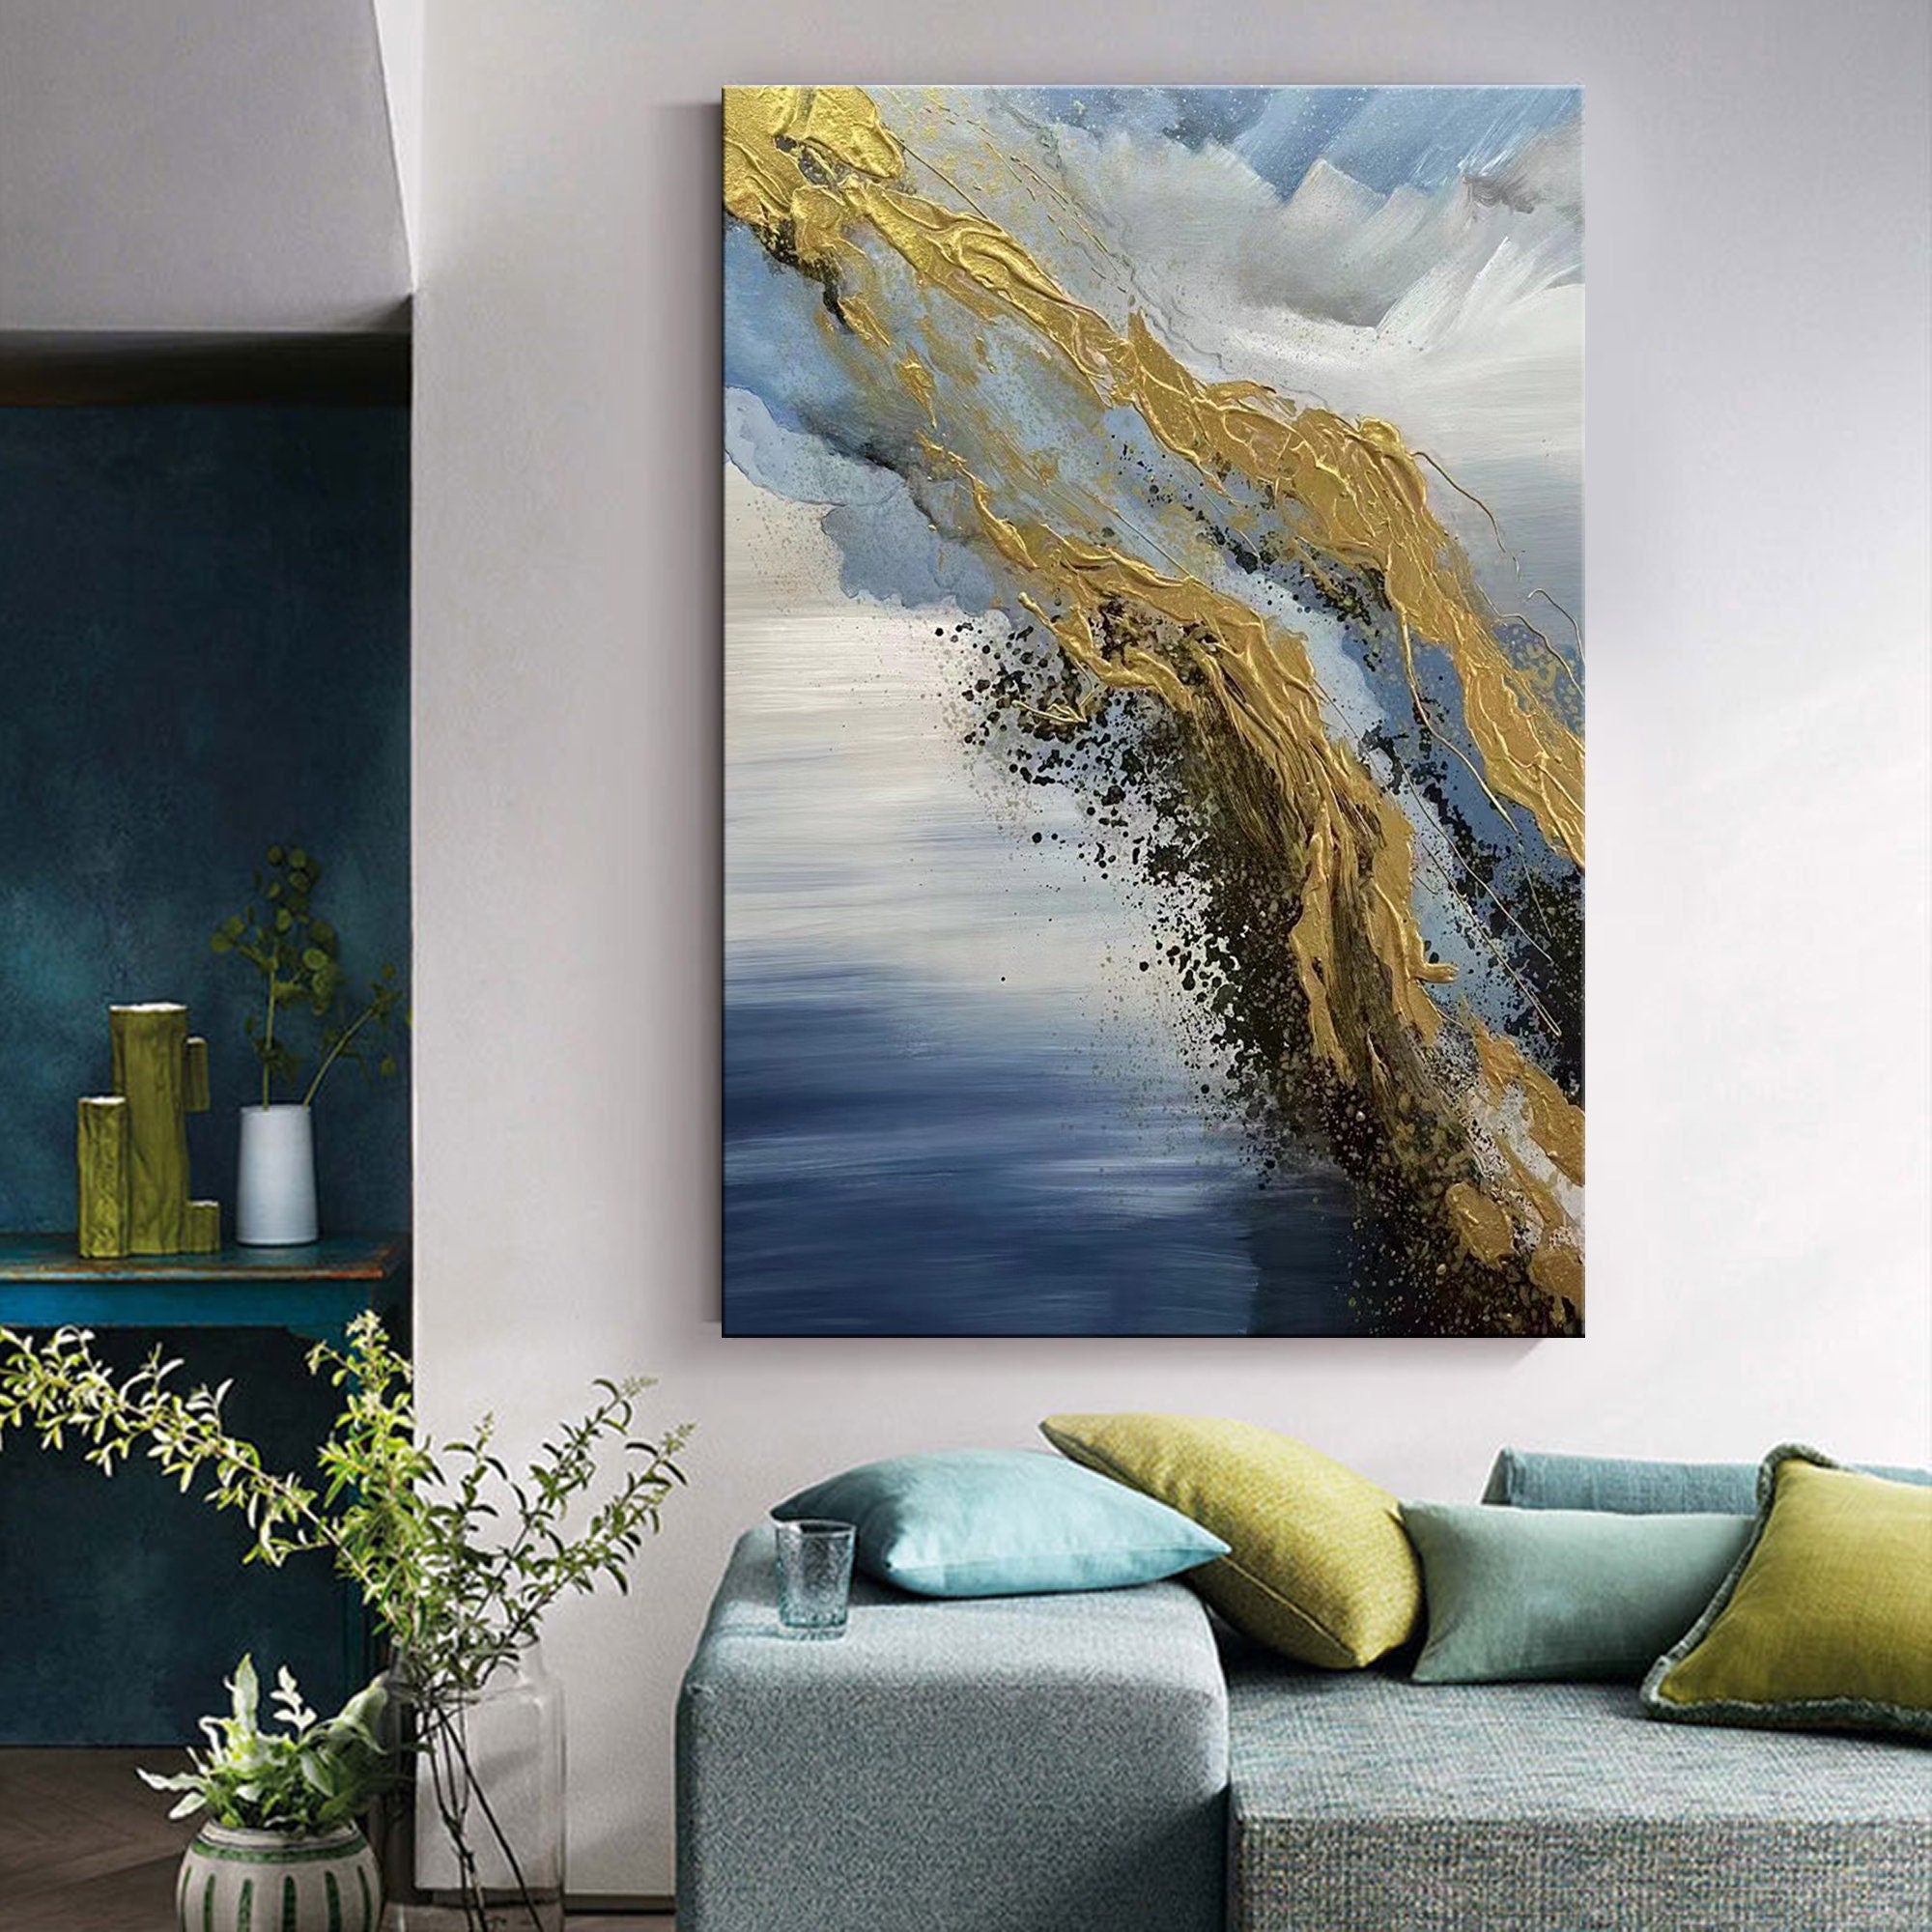 Harmonizing Elegance: Bespoke Oil Paintings in Modern Home Decor